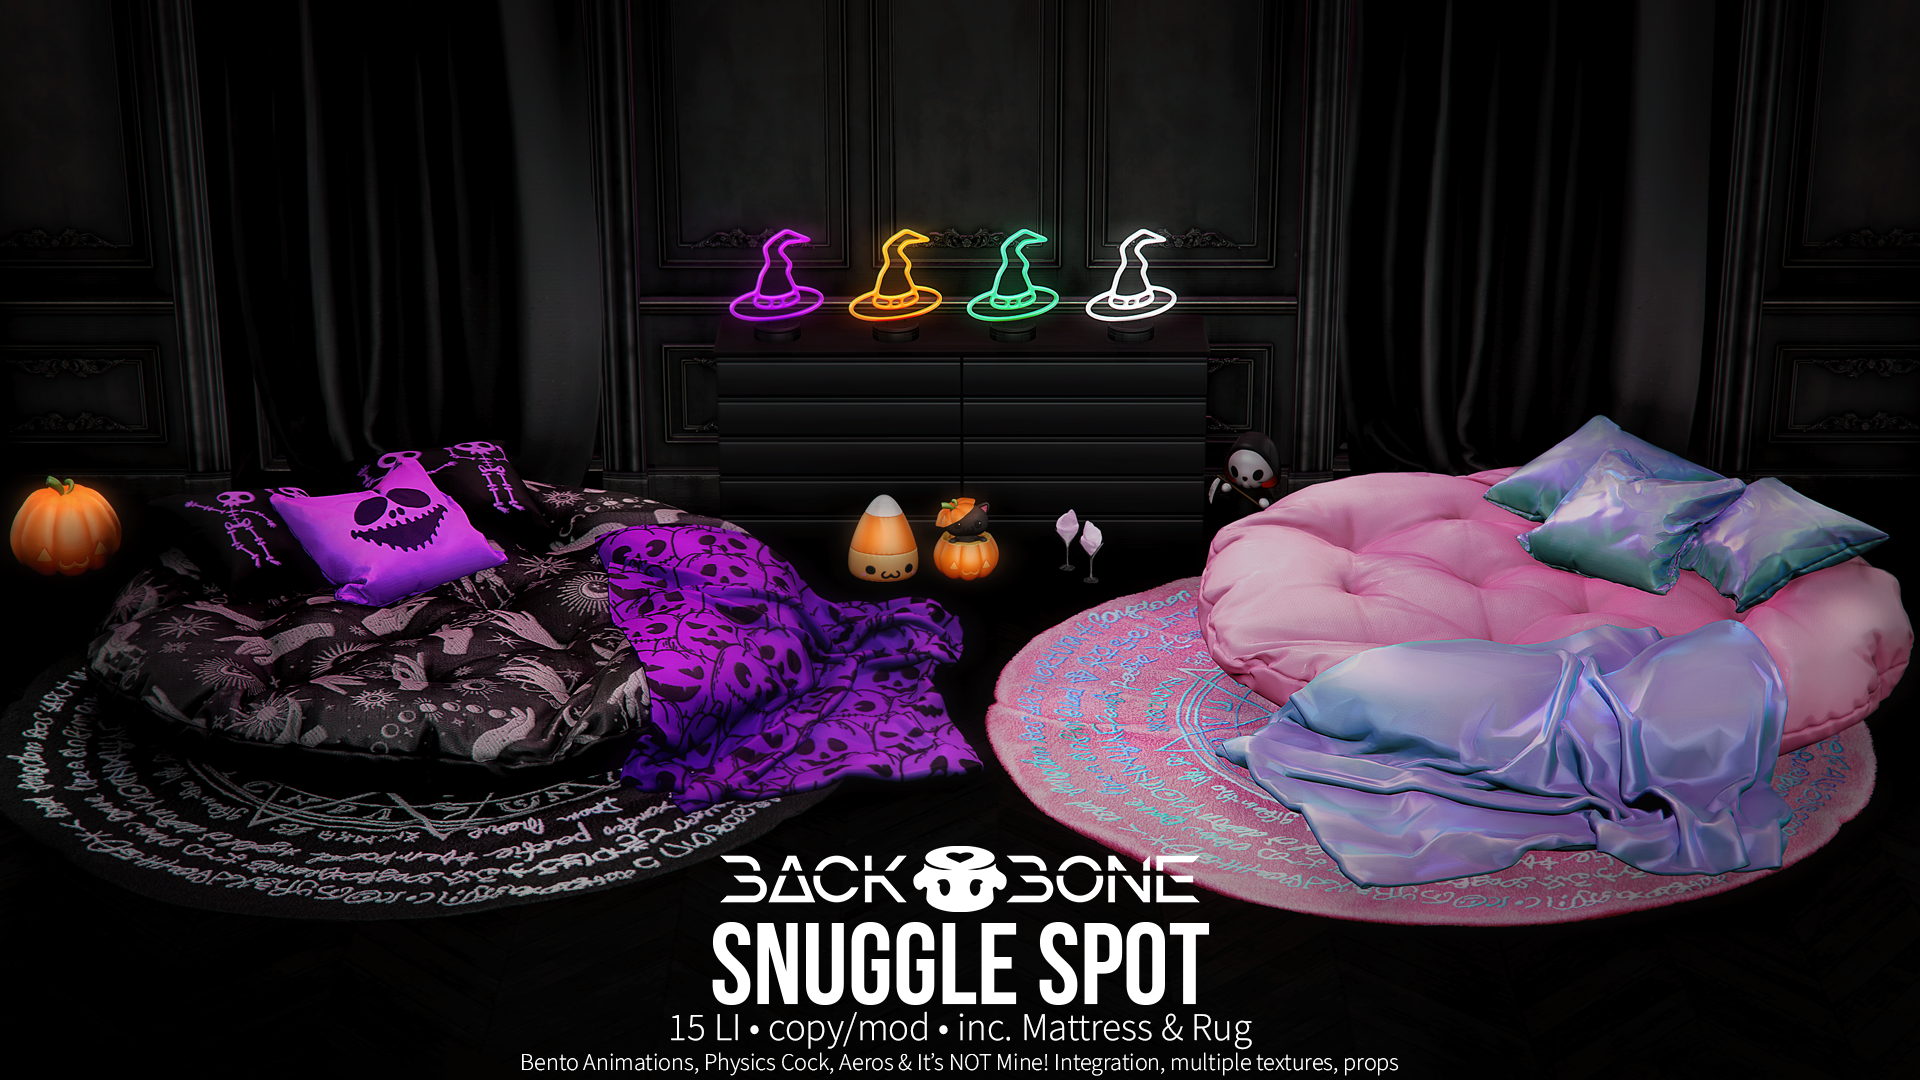 BackBone – Snuggle Spot